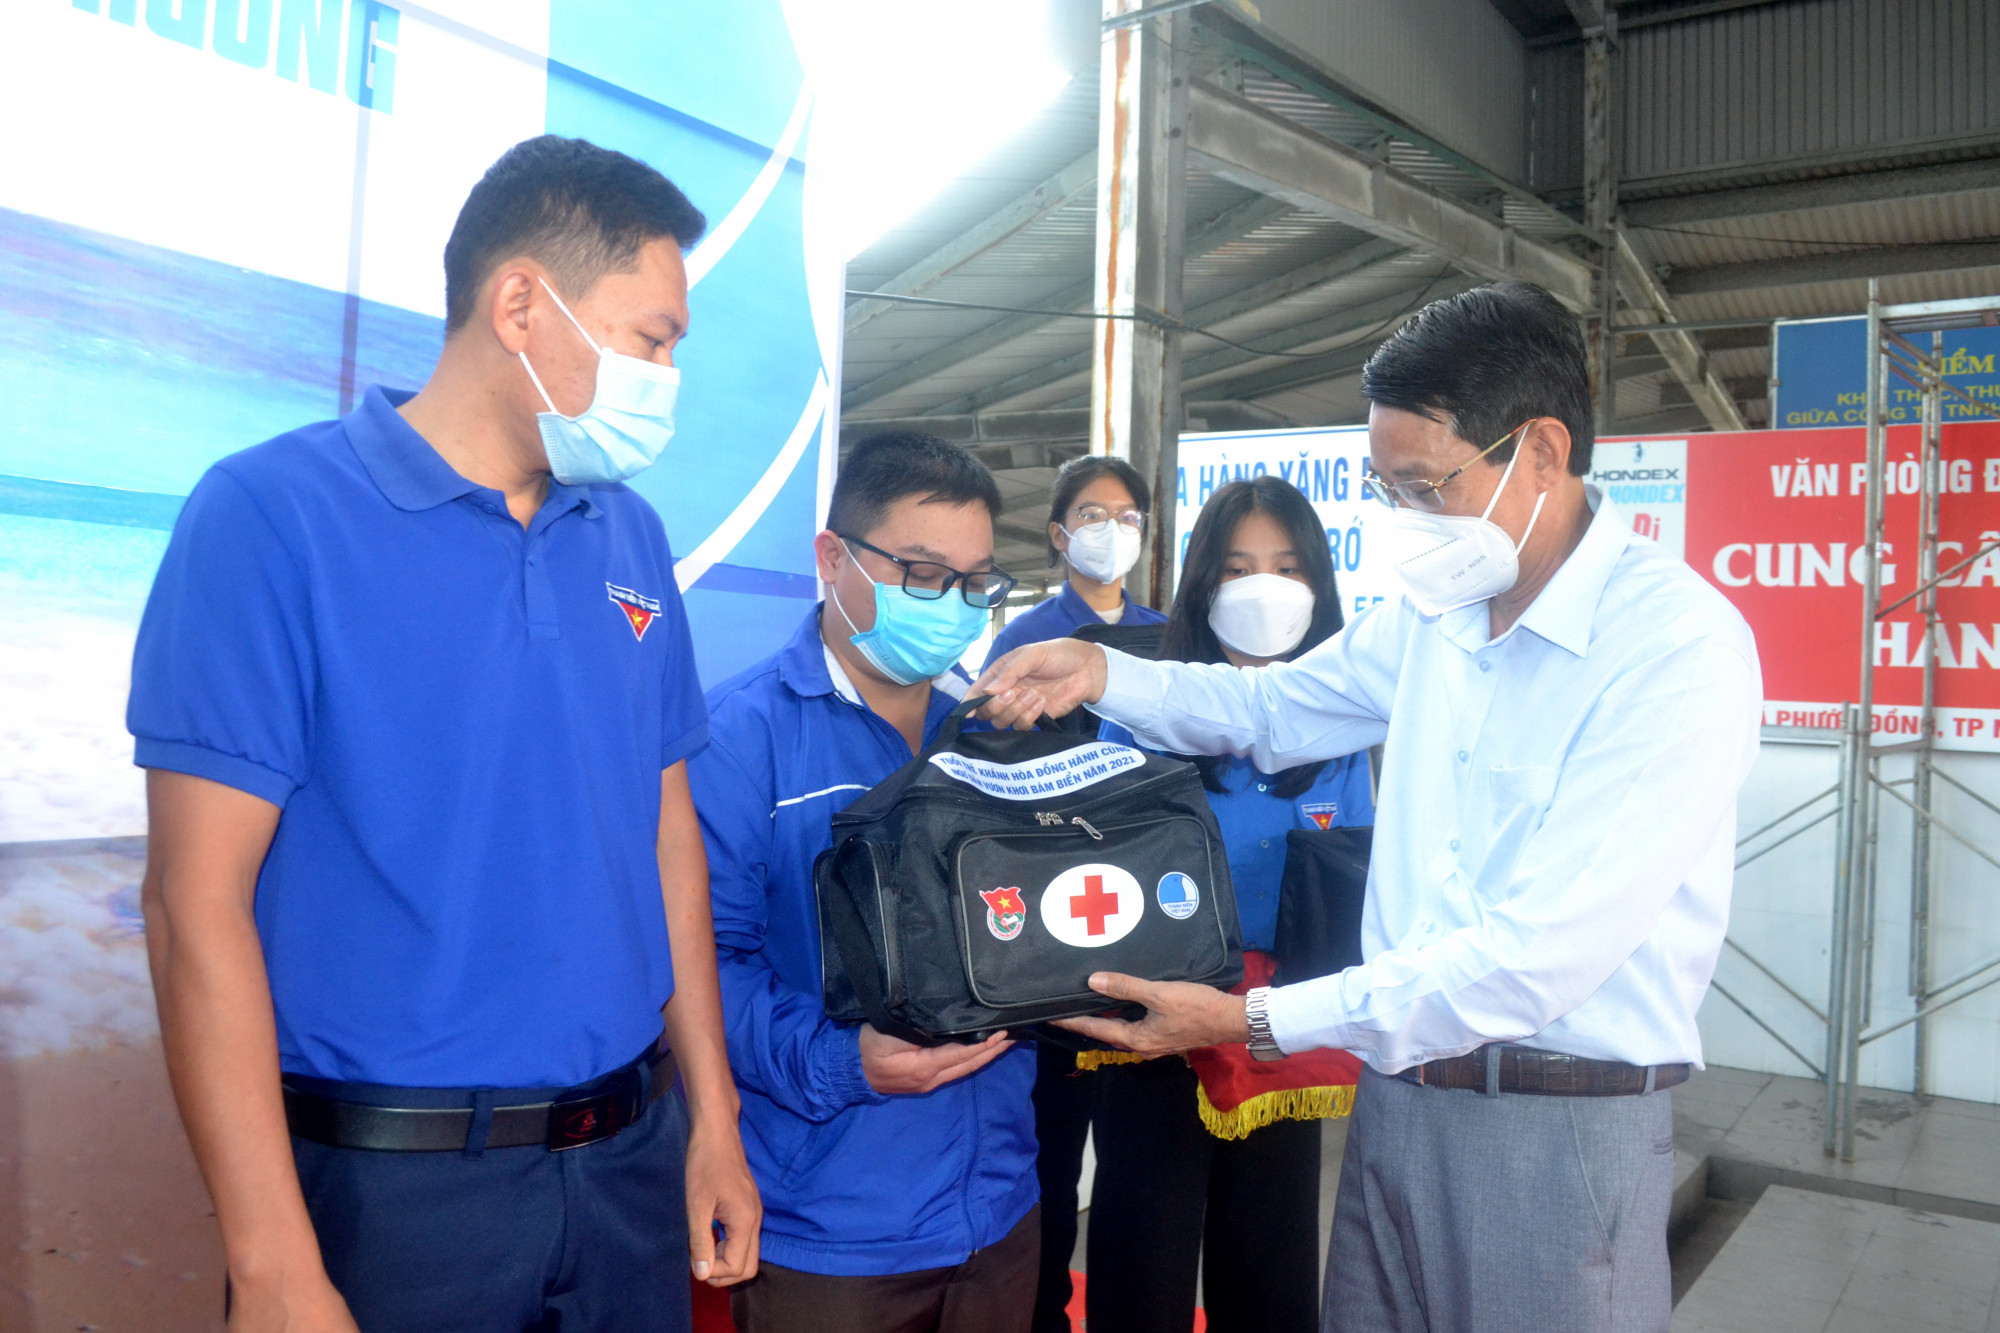 Ông Đinh Văn Thiệu – Phó Chủ tịch UBND tỉnh Khánh Hòa trao tặng túi y tế cho đại diện các đơn vị huyện, thị, thành đoàn để hỗ trợ ngư dân